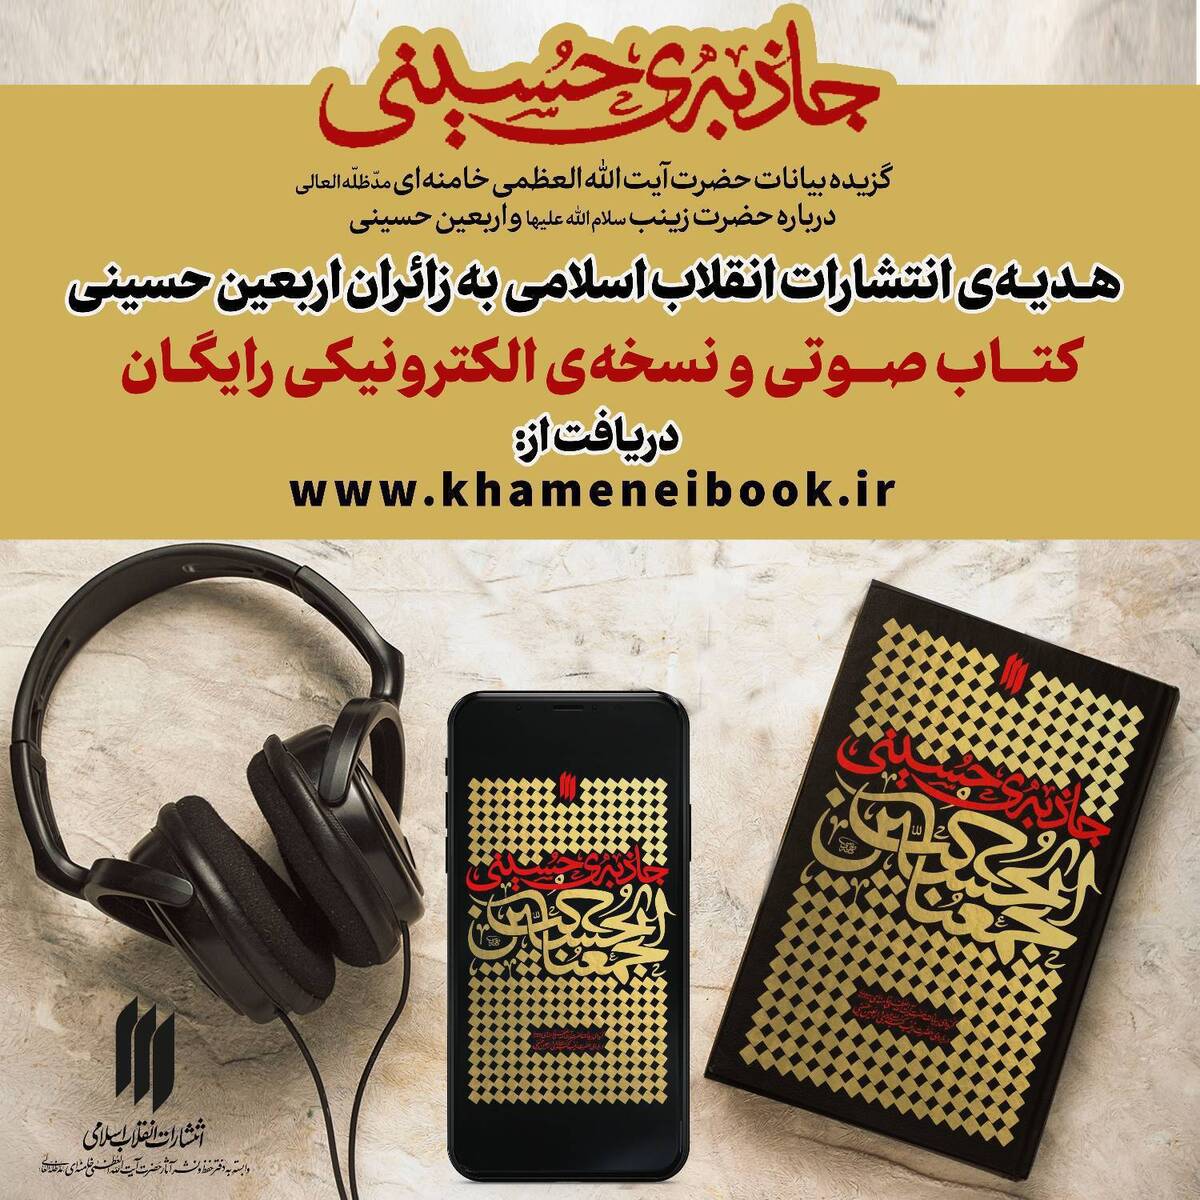 هدیه انتشارات انقلاب اسلامی به زائران اربعین حسینی